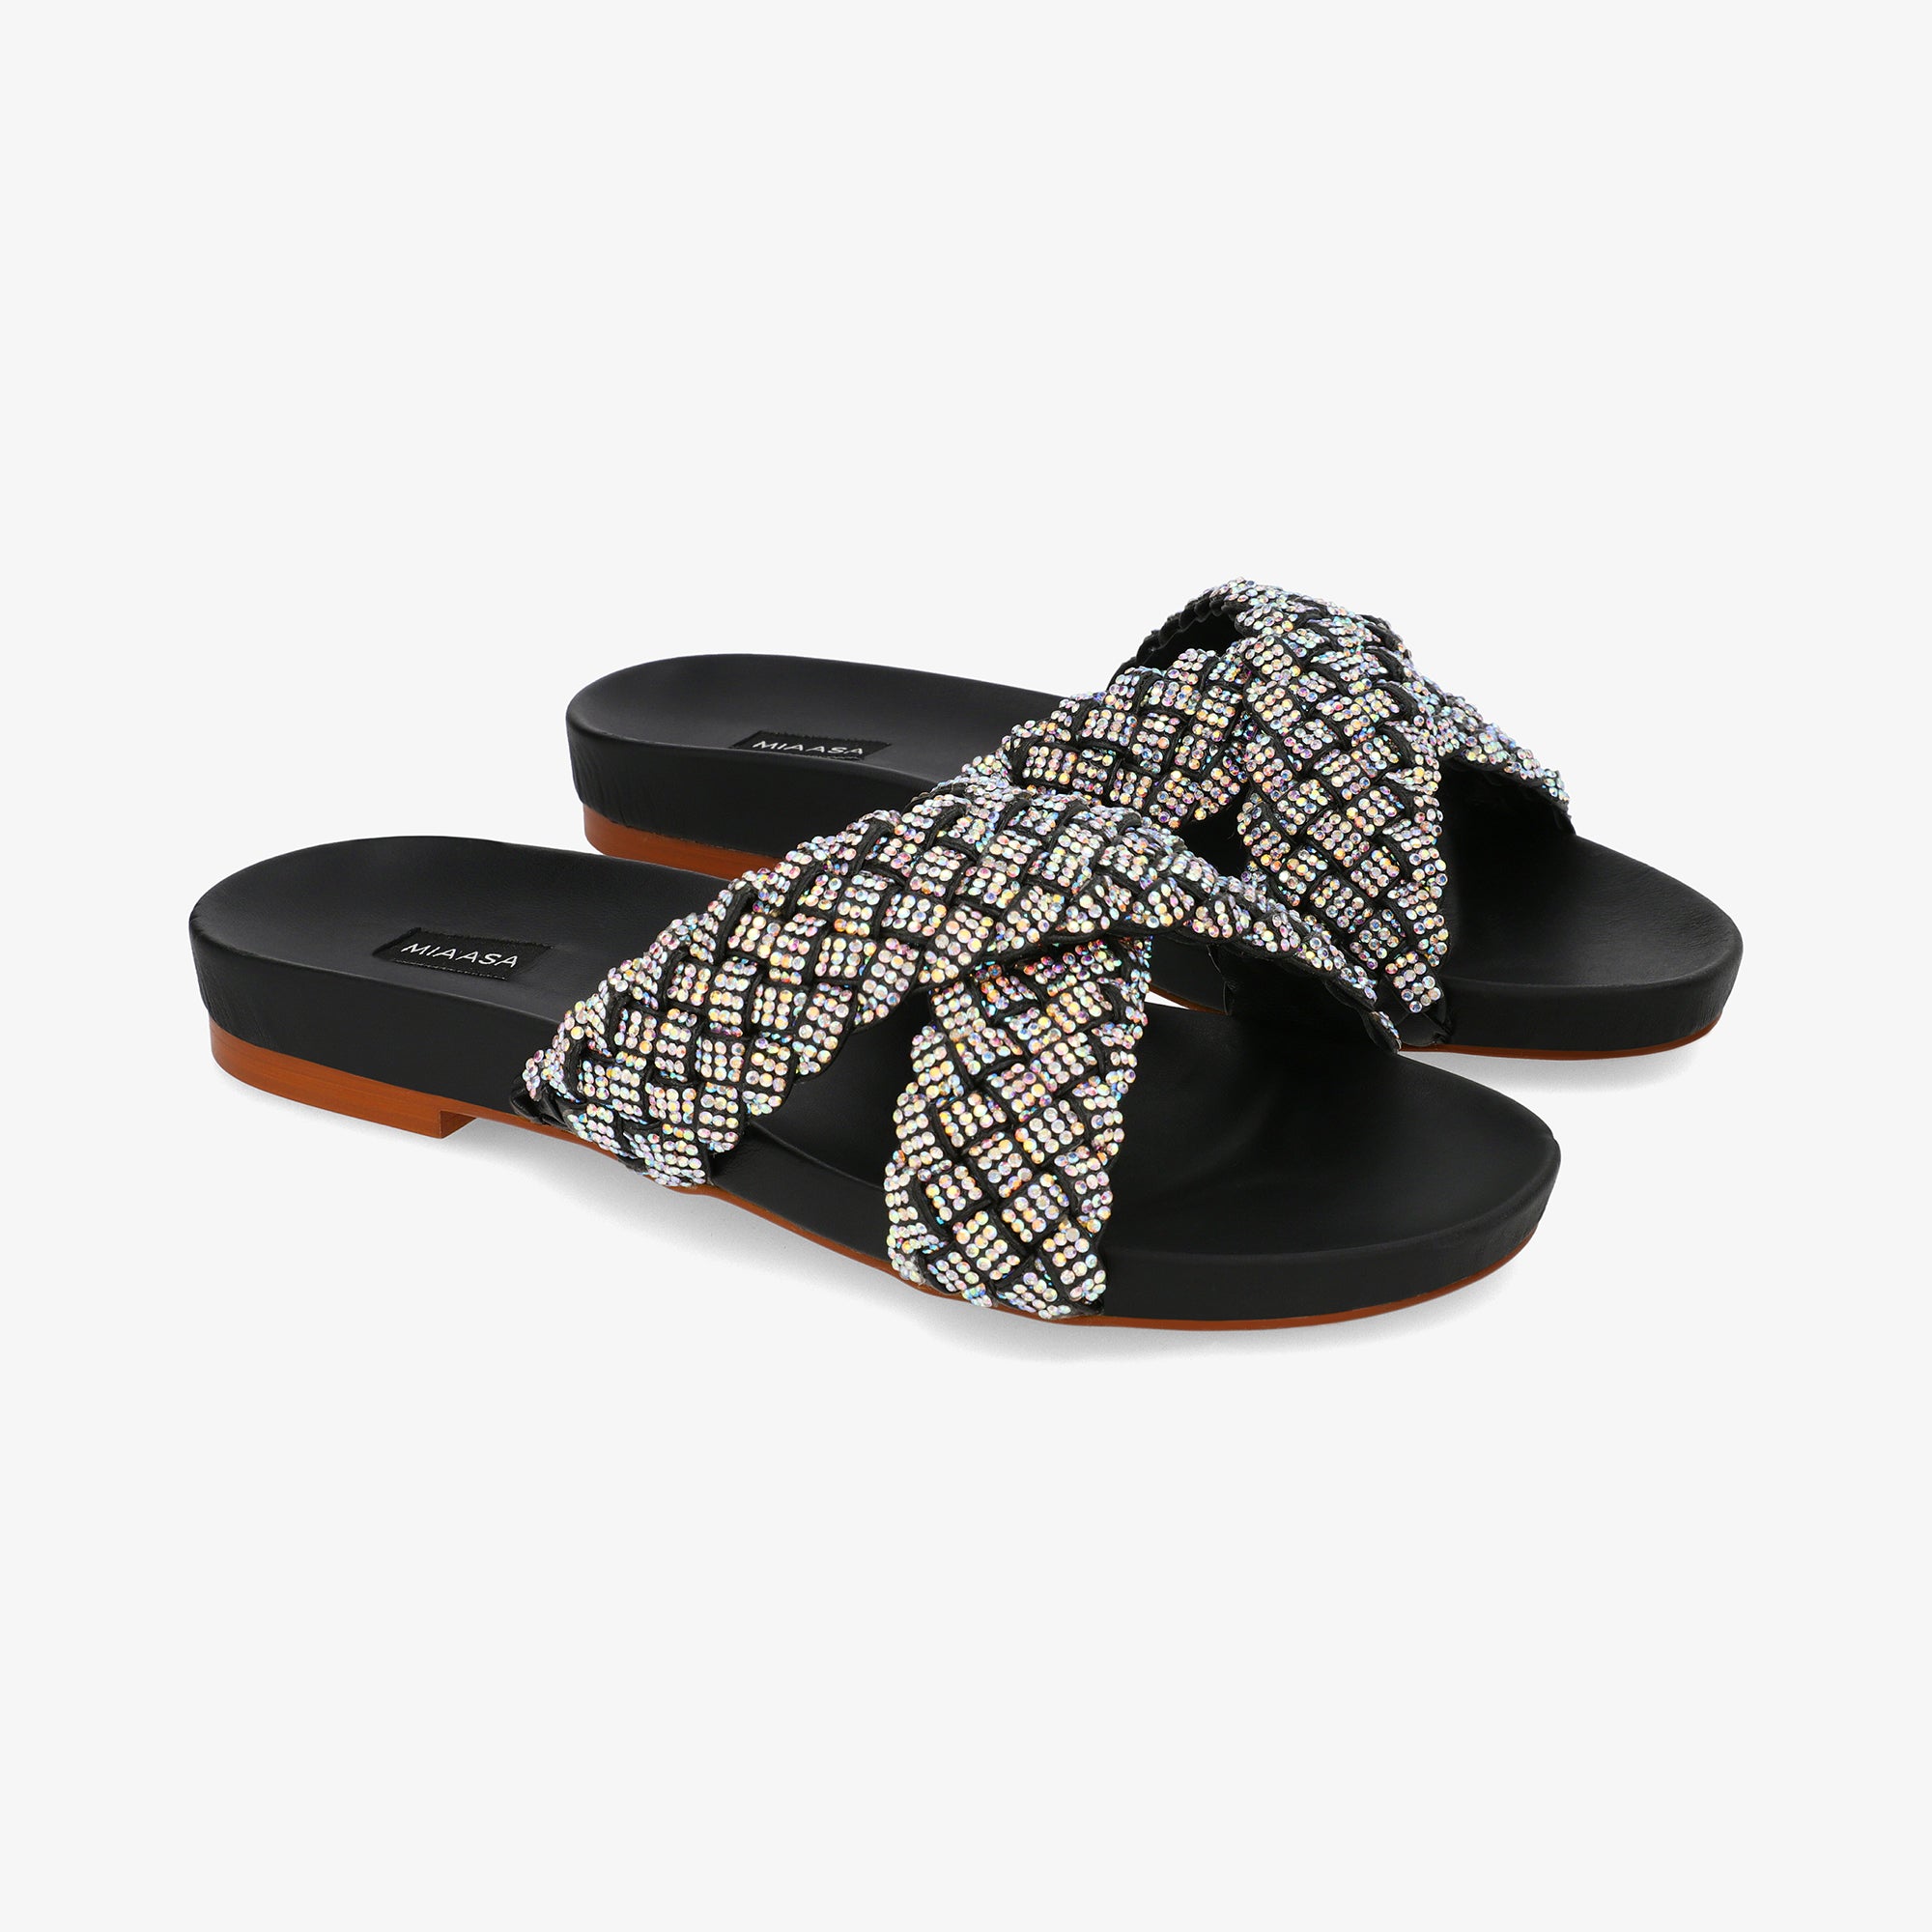 Talia – Miaasa Footwear